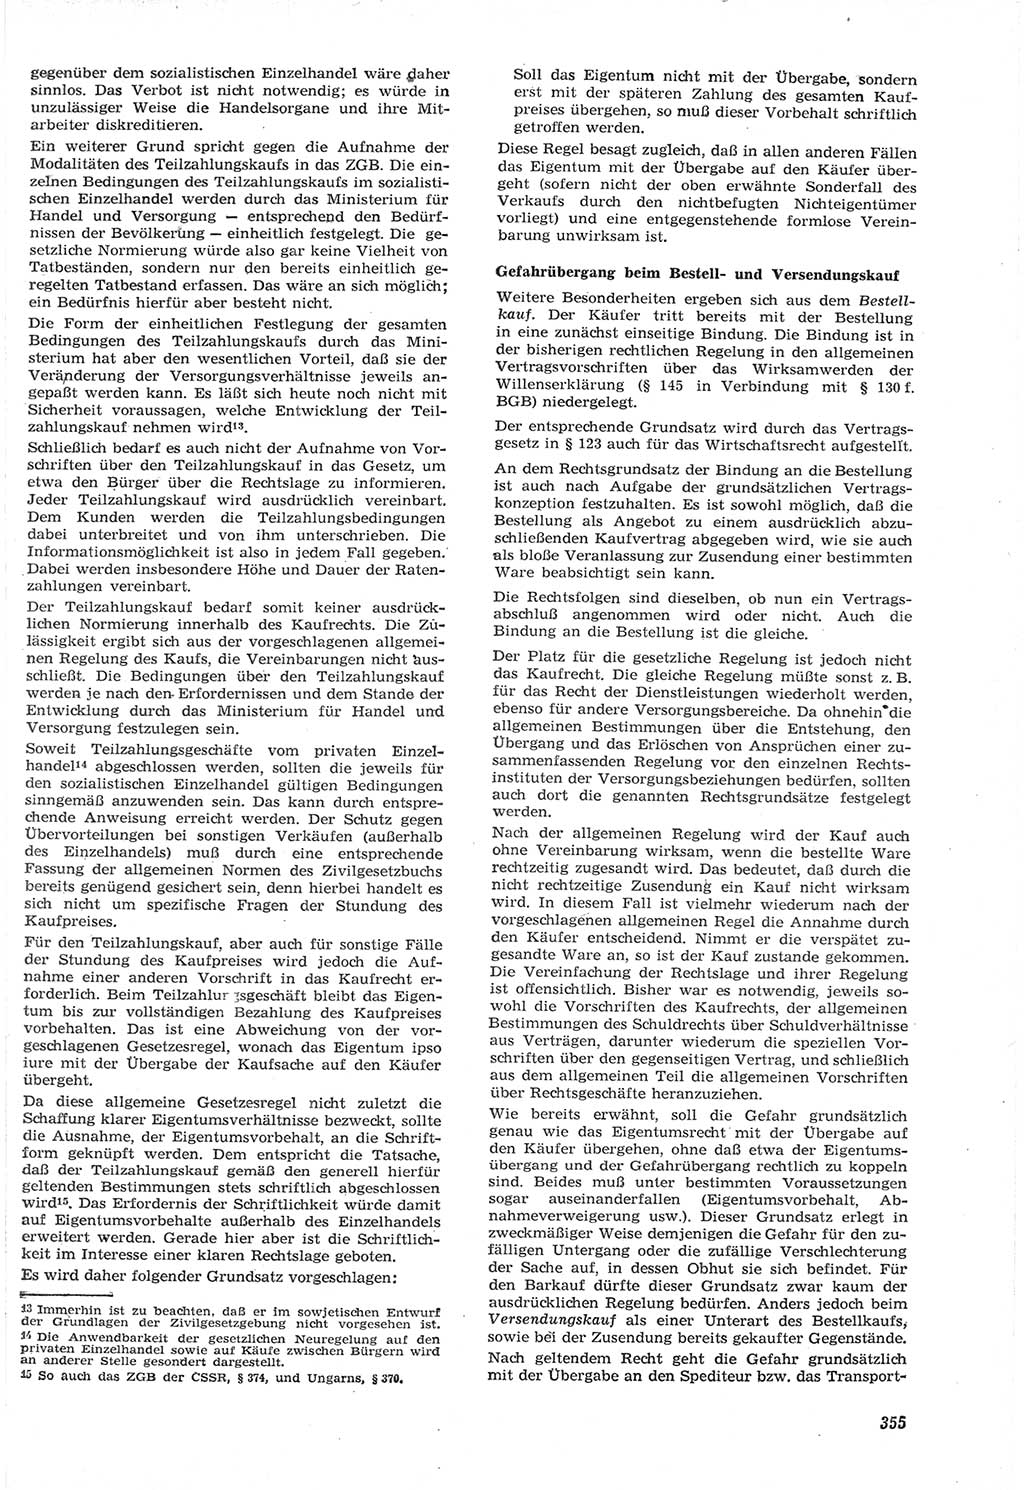 Neue Justiz (NJ), Zeitschrift für Recht und Rechtswissenschaft [Deutsche Demokratische Republik (DDR)], 15. Jahrgang 1961, Seite 355 (NJ DDR 1961, S. 355)